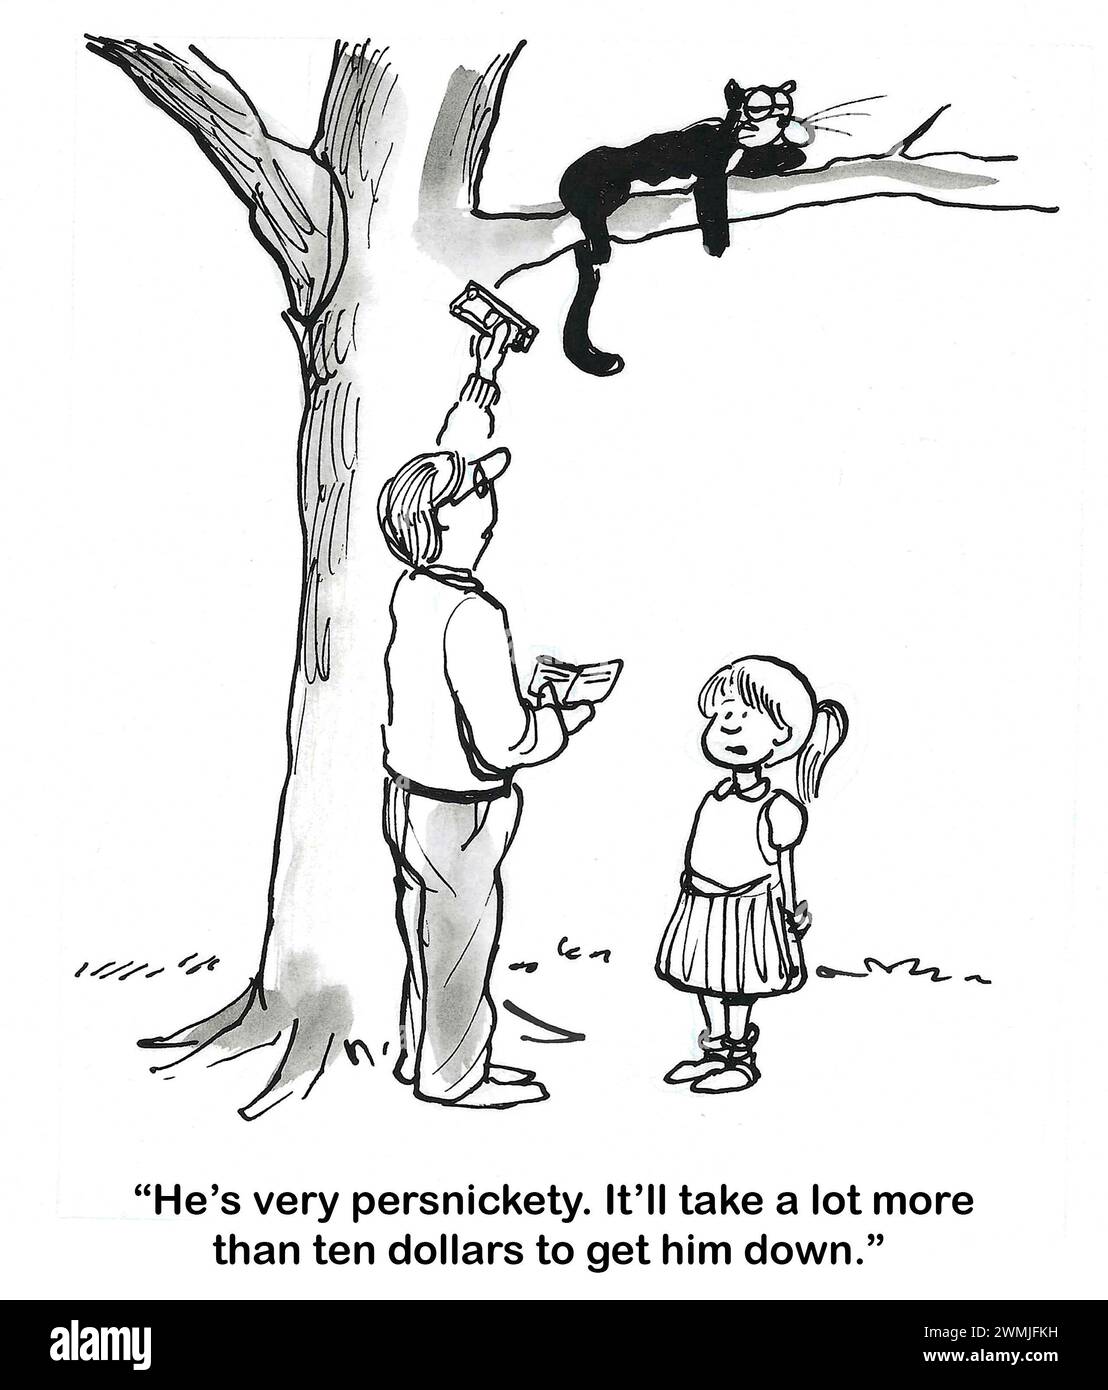 Dessin animé BW d'un chat sur une branche d'arbre haute. Le père offre au chat 10,00 $ pour descendre. Daugher dit "il faudra beaucoup plus". Banque D'Images